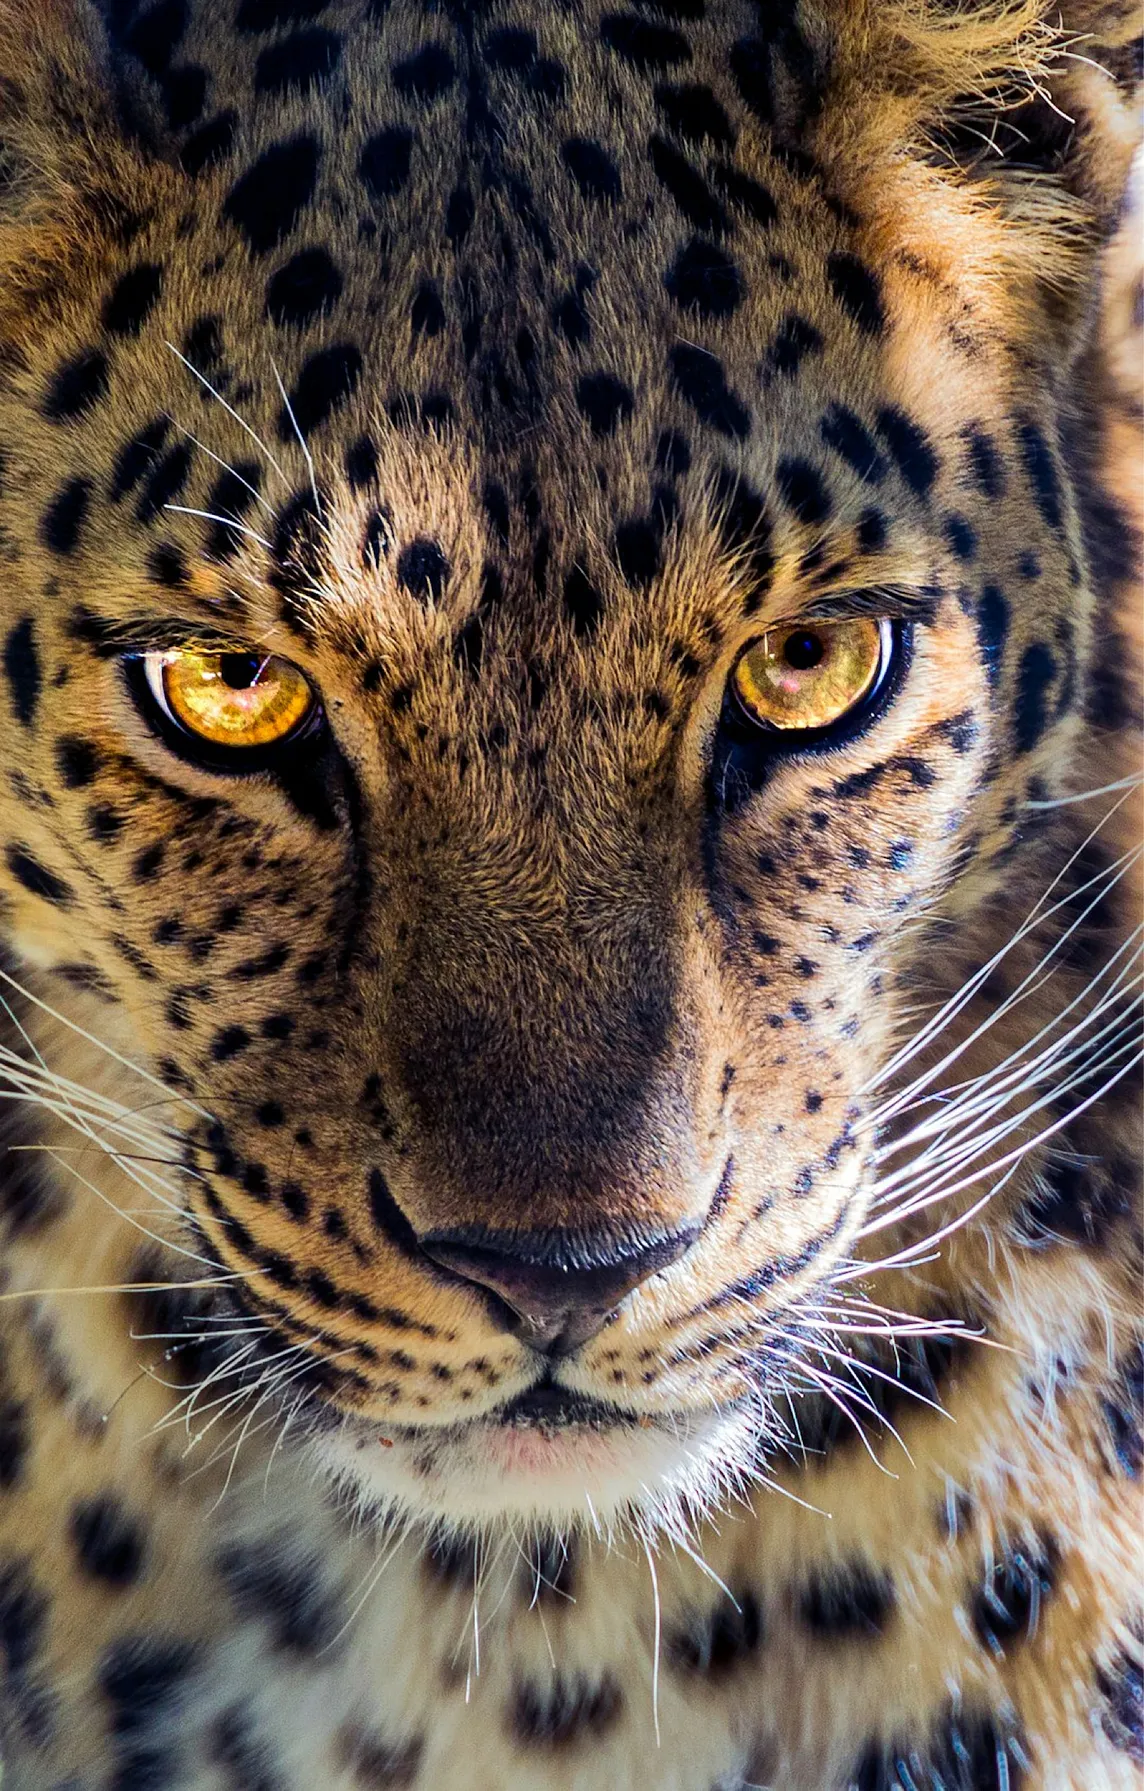 Tracking Jaguars in Guyana